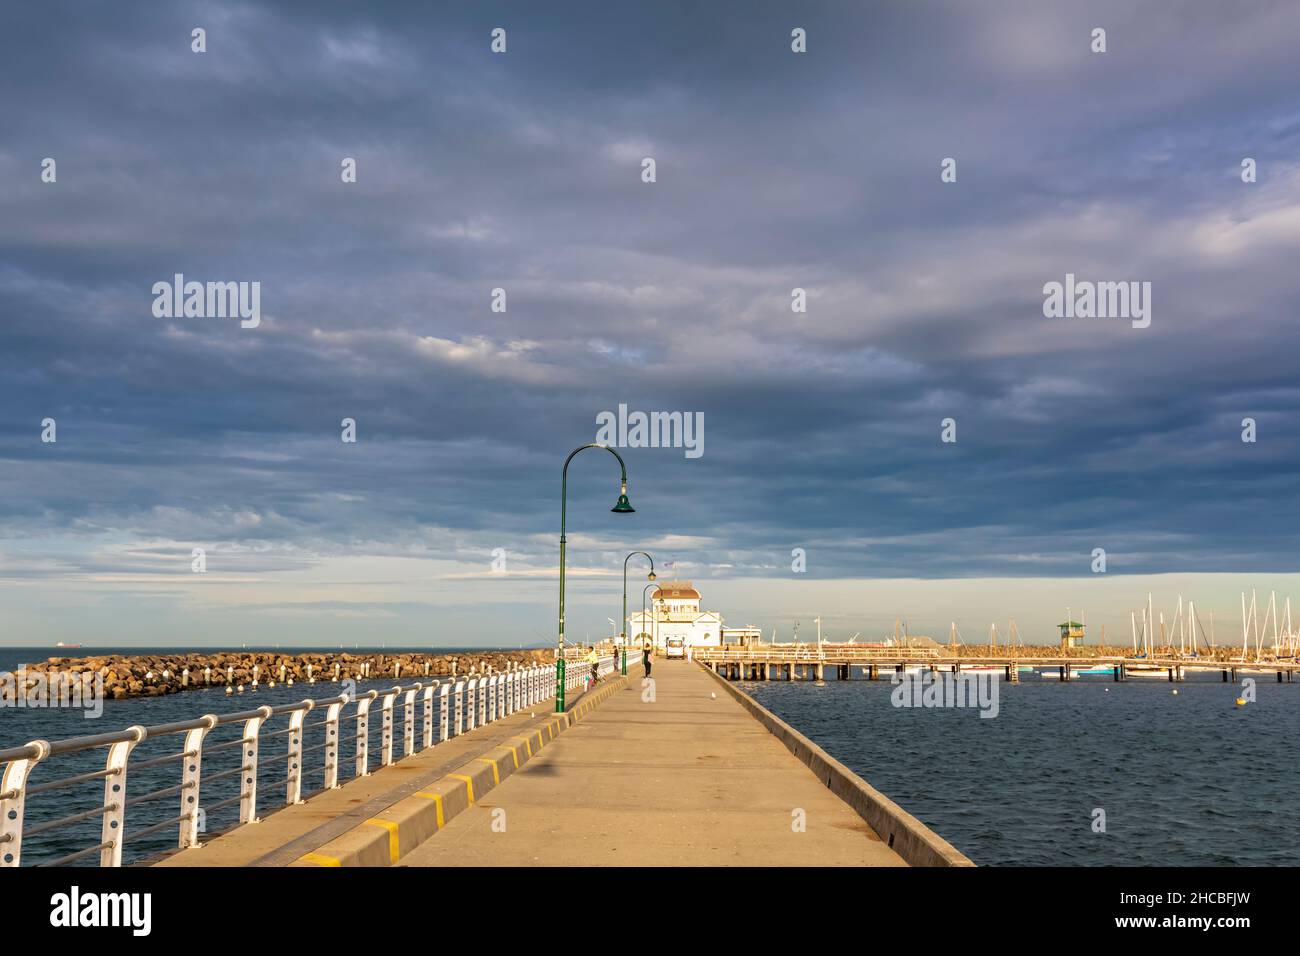 Australia, Victoria, Melbourne, nuvole sulla città costiera con barche che galleggiano in primo piano Foto Stock